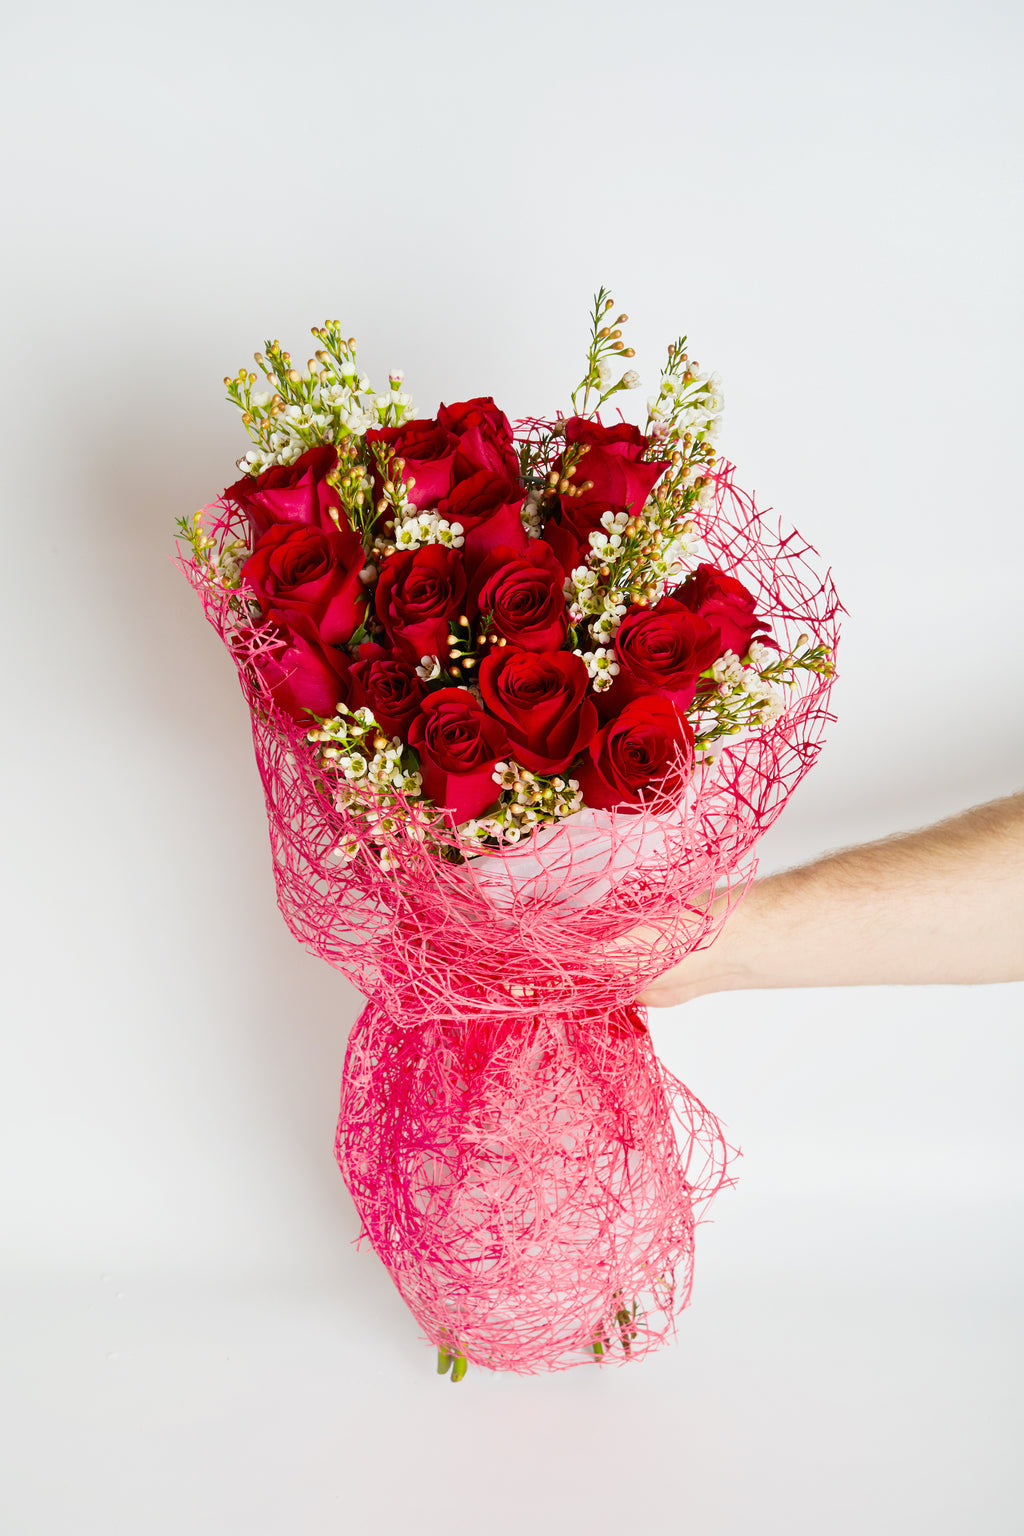 Bouquet of premium red roses